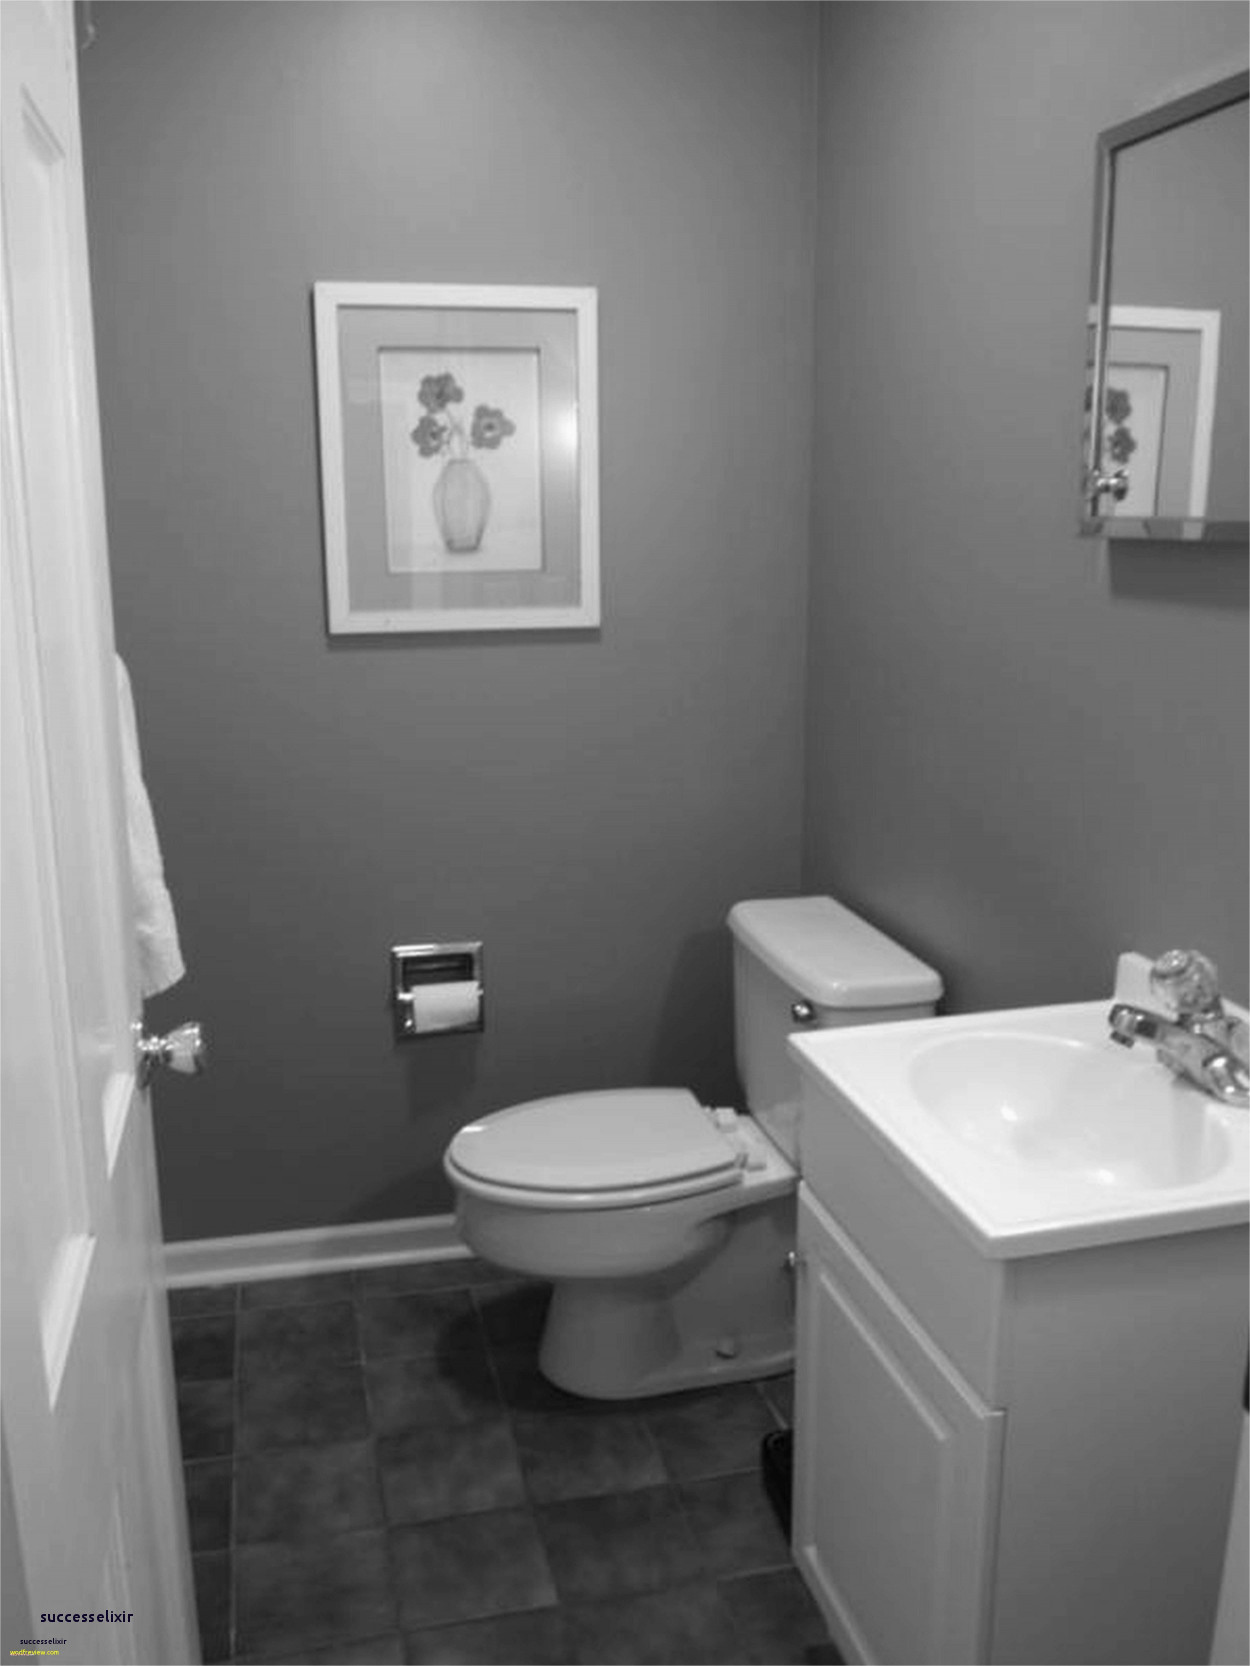 Best Of Black And White Wallpaper For Bathroom 38 Sensational ...